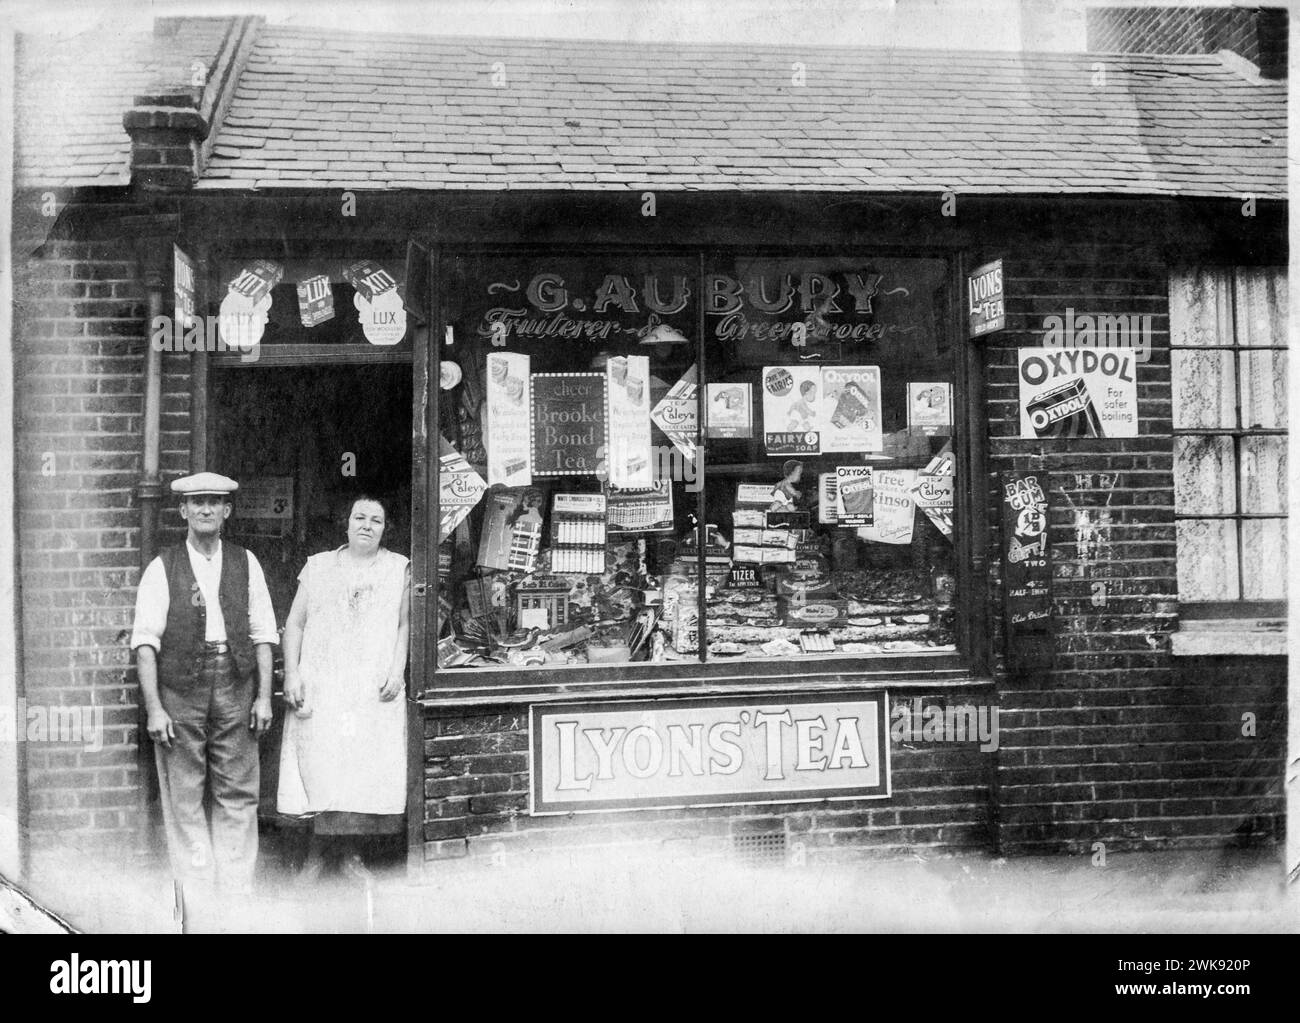 Schwarz-weiß-Familienschnappschuss von George Aubury und seiner Schwägerin Caroline Aubury, vor ihrem Familienobst- und Lebensmittelladen in der Battersea Park Road, South London, Anfang der 1930er Jahre Stockfoto